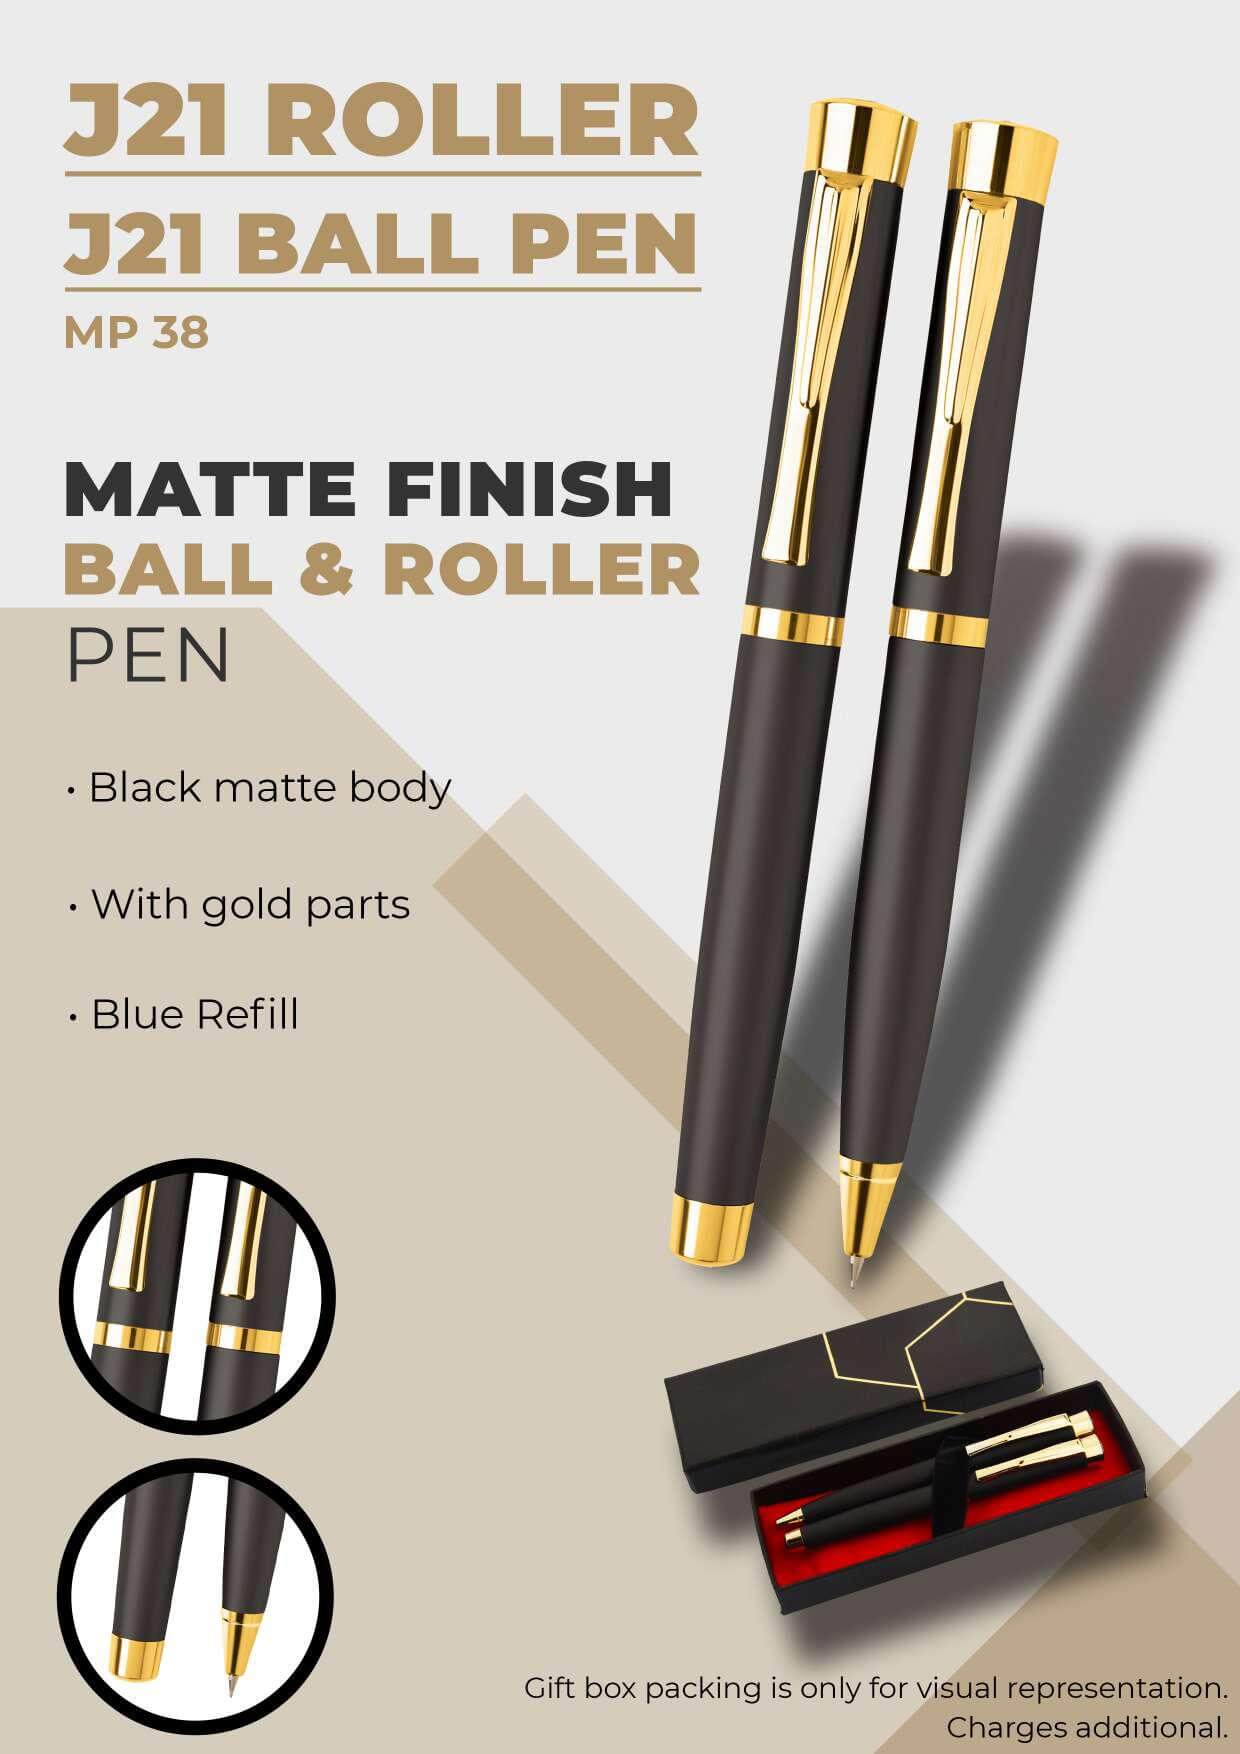 Matte Finish Roller & Ball Pen